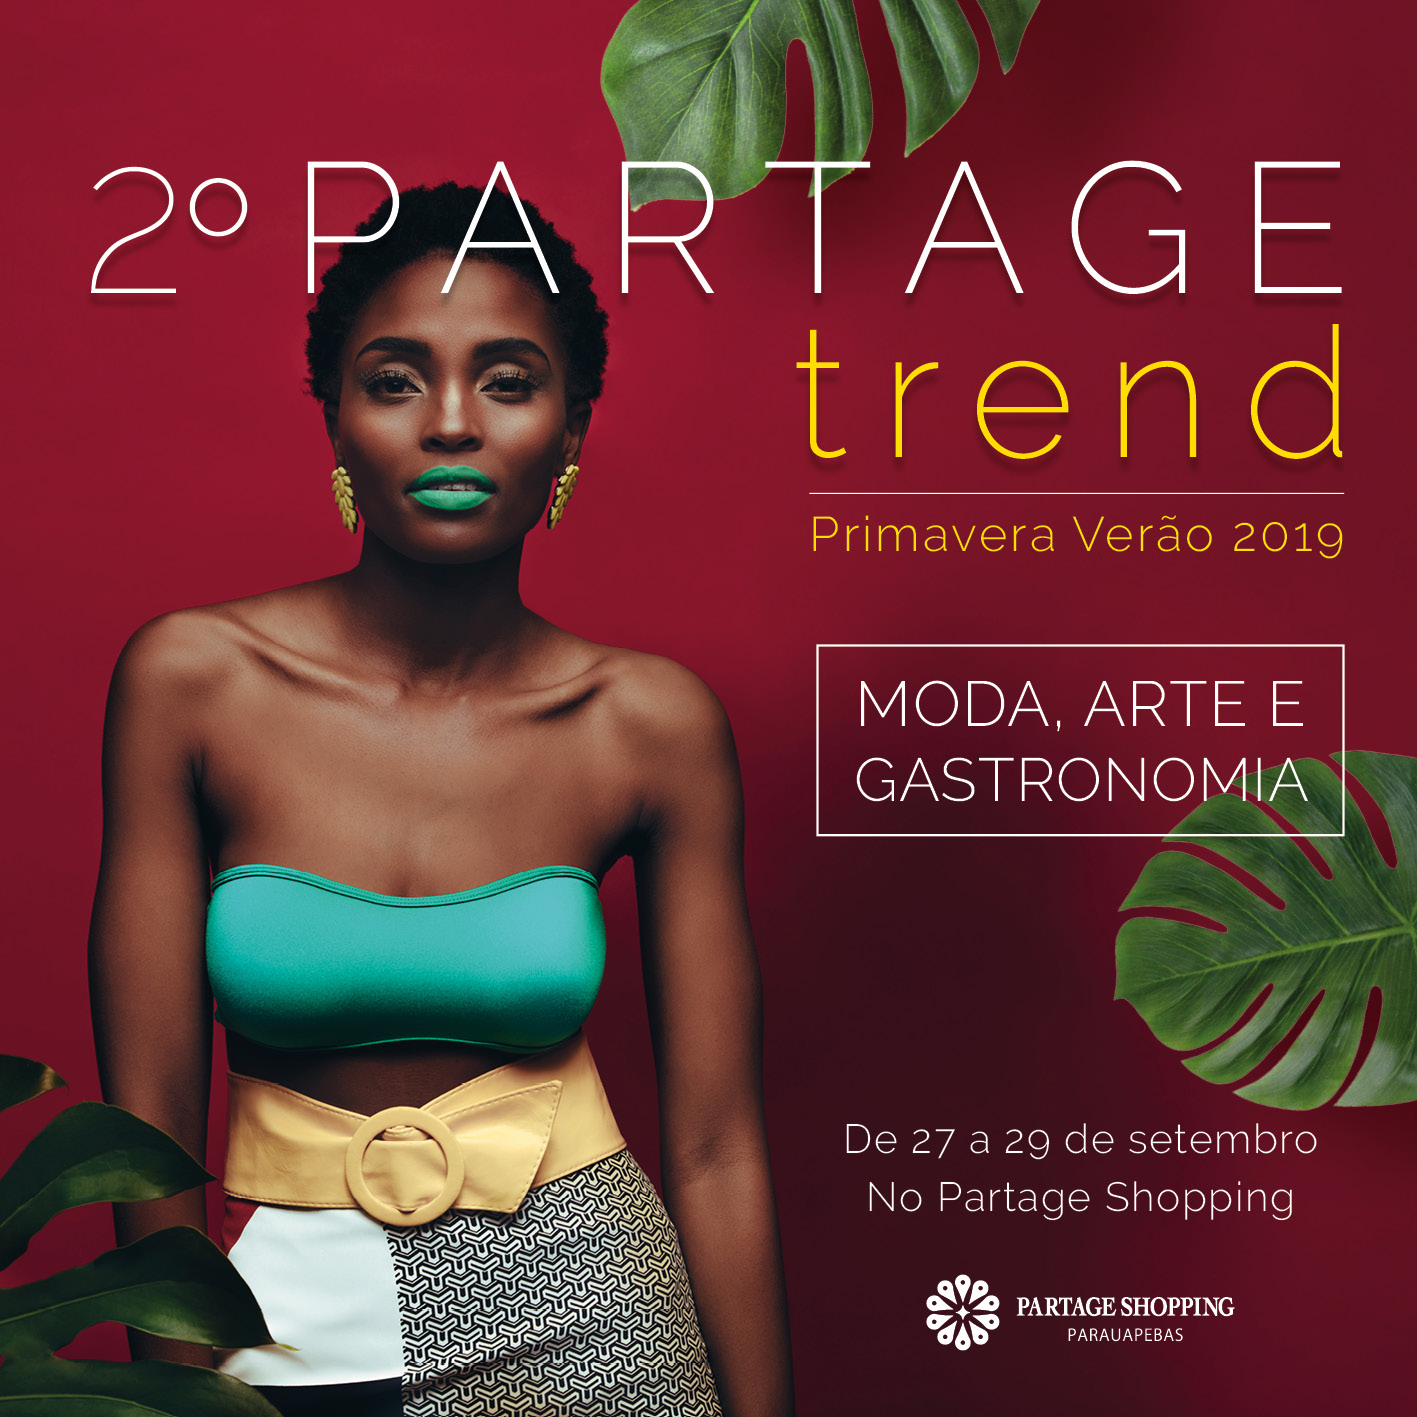  Partage Shopping Parauapebas realiza segunda edição da semana de moda, arte e gastronomia